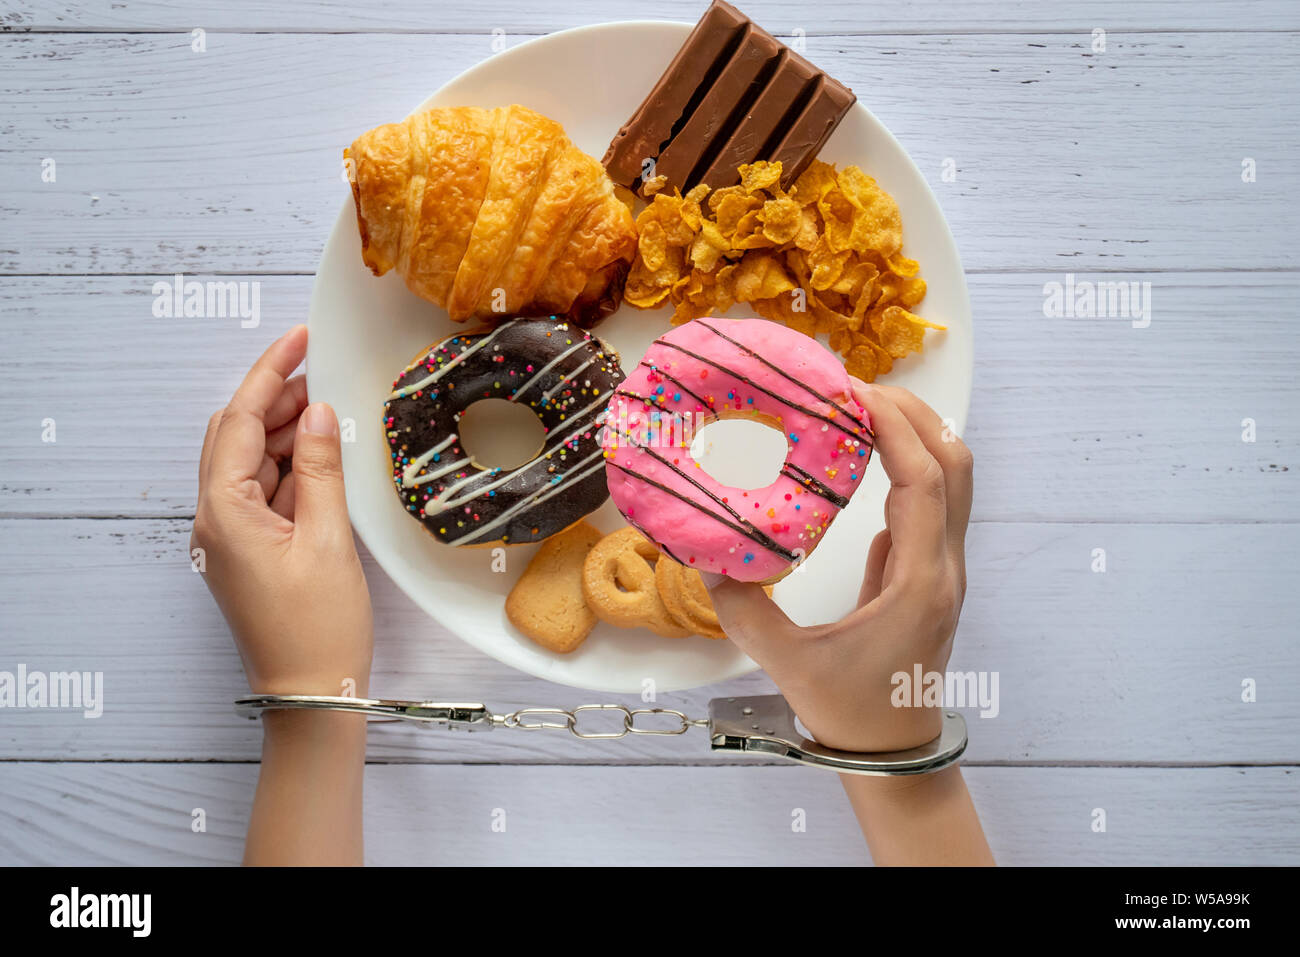 Kalorien, Ernährung und Gewichtsabnahme Konzept. nach oben Blick auf zwei Händen war Kontrolle durch Handschellen, holding Donut aus weißen Teller auf hölzernen Tisch Stockfoto